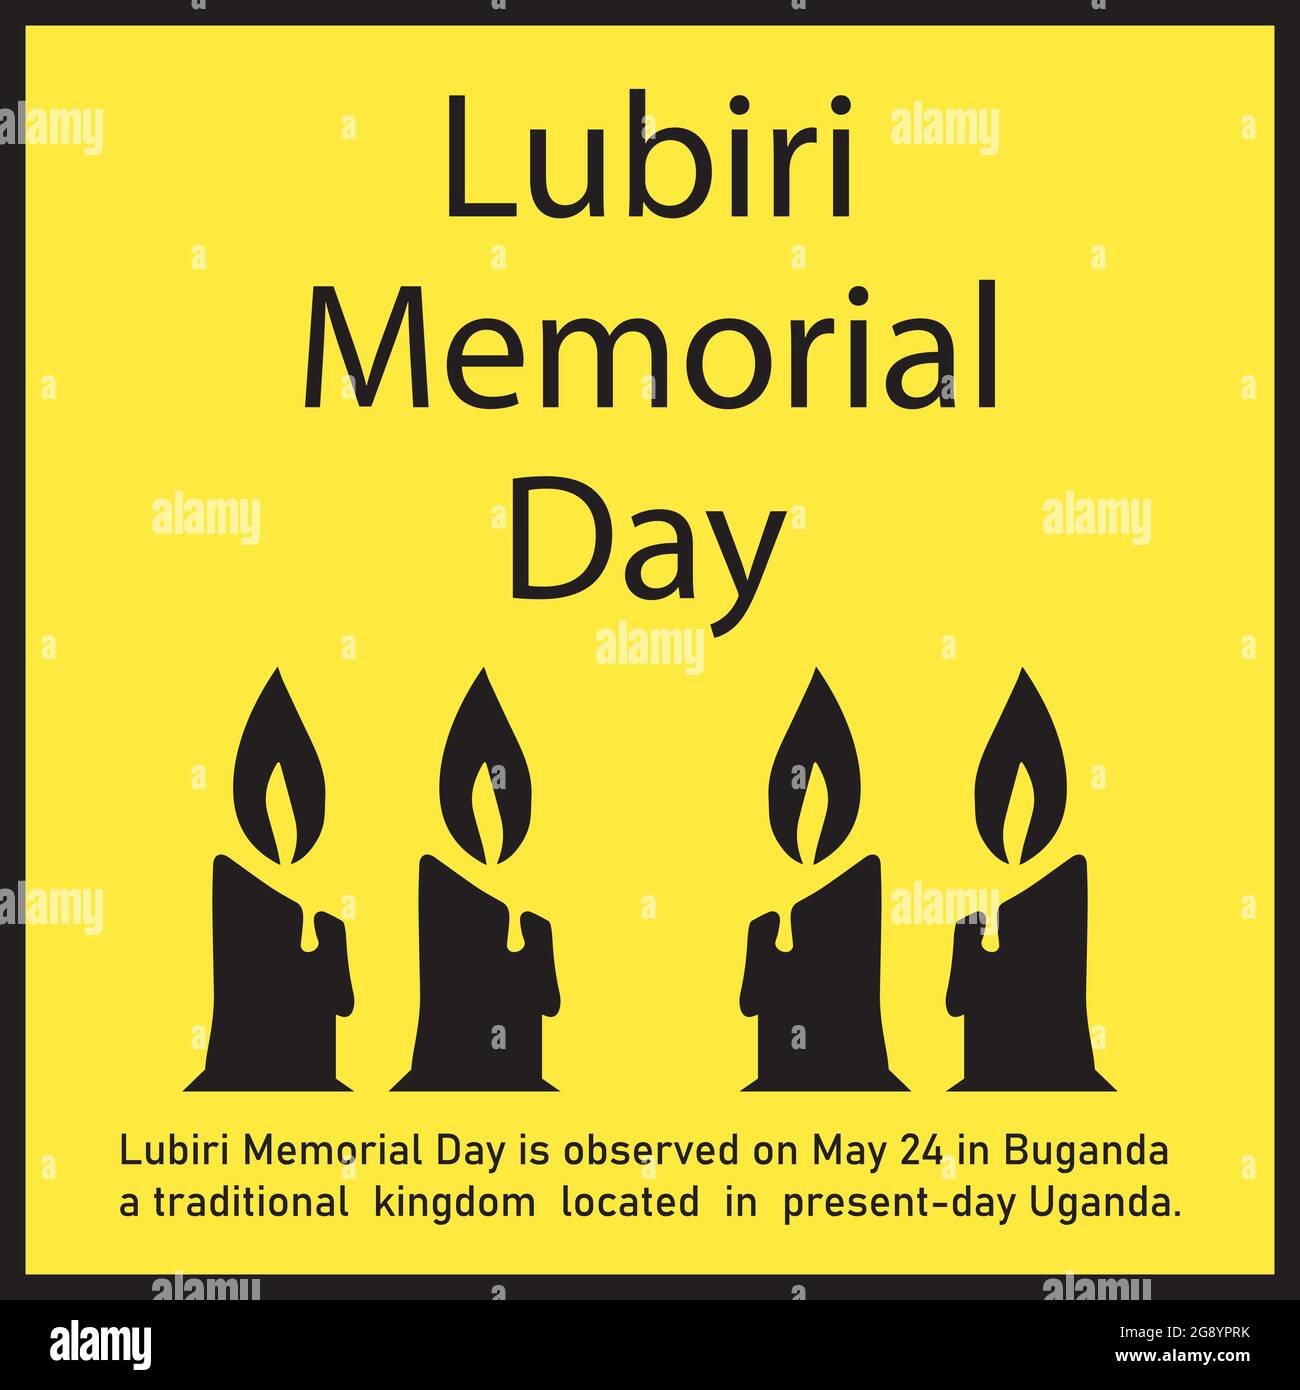 Der Lubiri Memorial Day wird am 24. Mai in Buganda, einem traditionellen Königreich im heutigen Uganda, begangen. Stock Vektor